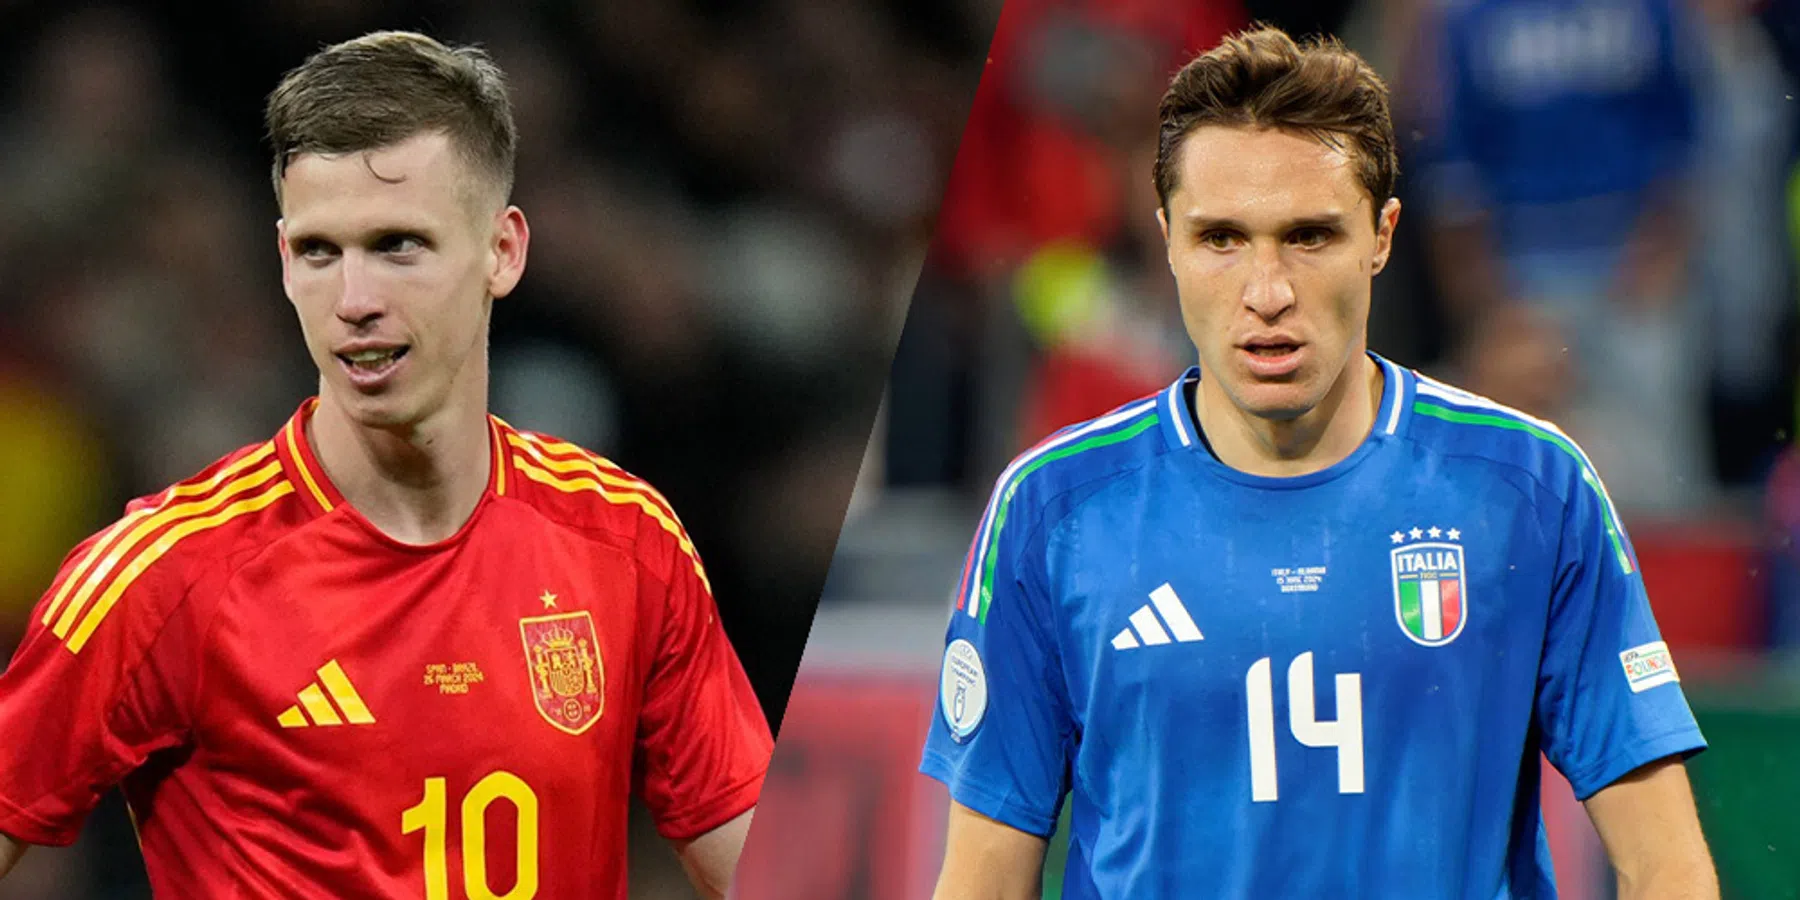 Hoe vaak speelden Spanje en Italië tegen elkaar en wie won het vaakst?